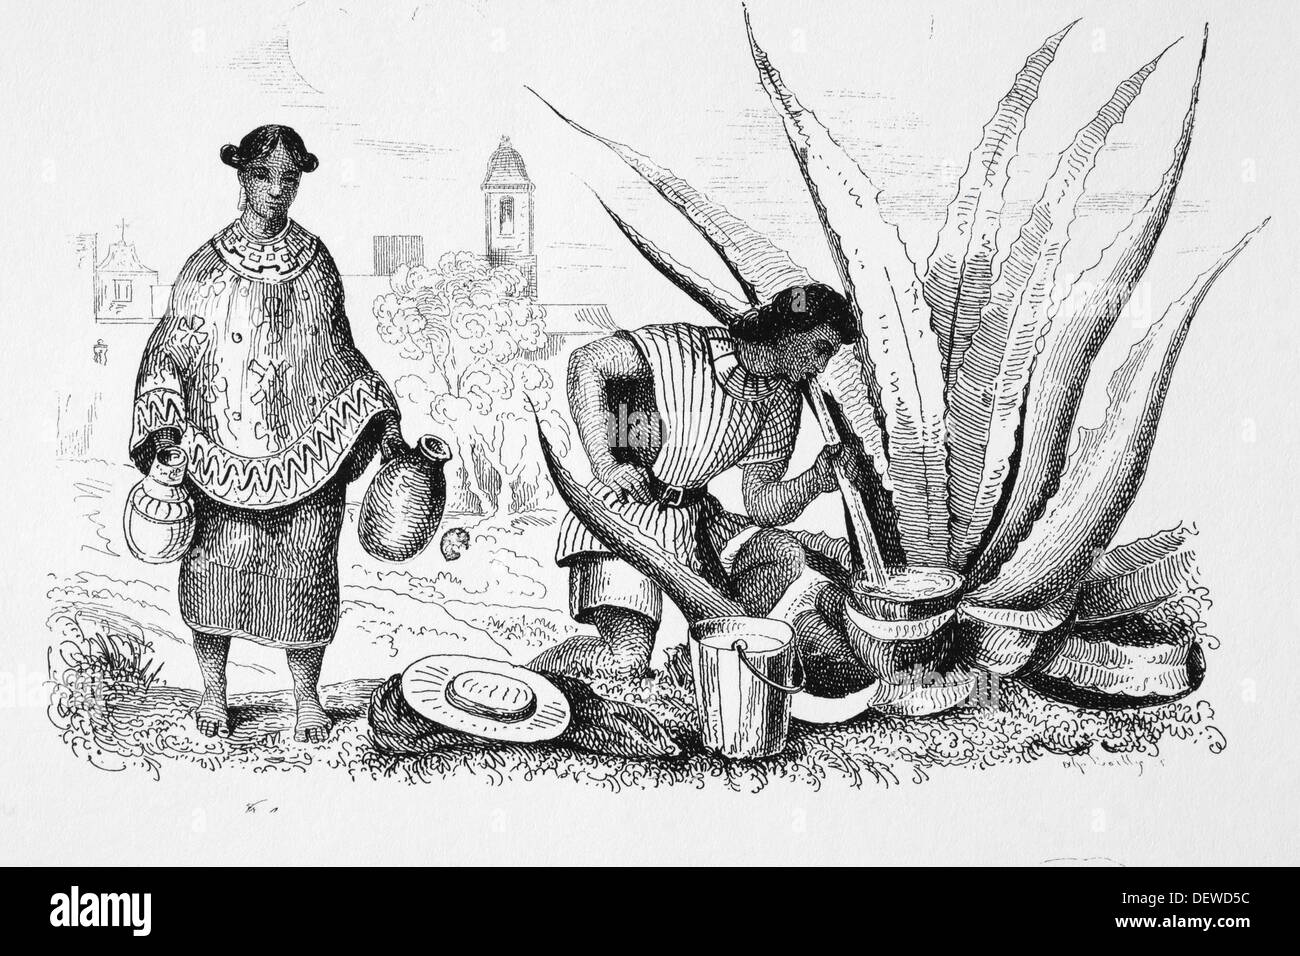 Amerika. Mexiko. Ureinwohner im Süden Mexikos, um 1840. Gravur. Stockfoto